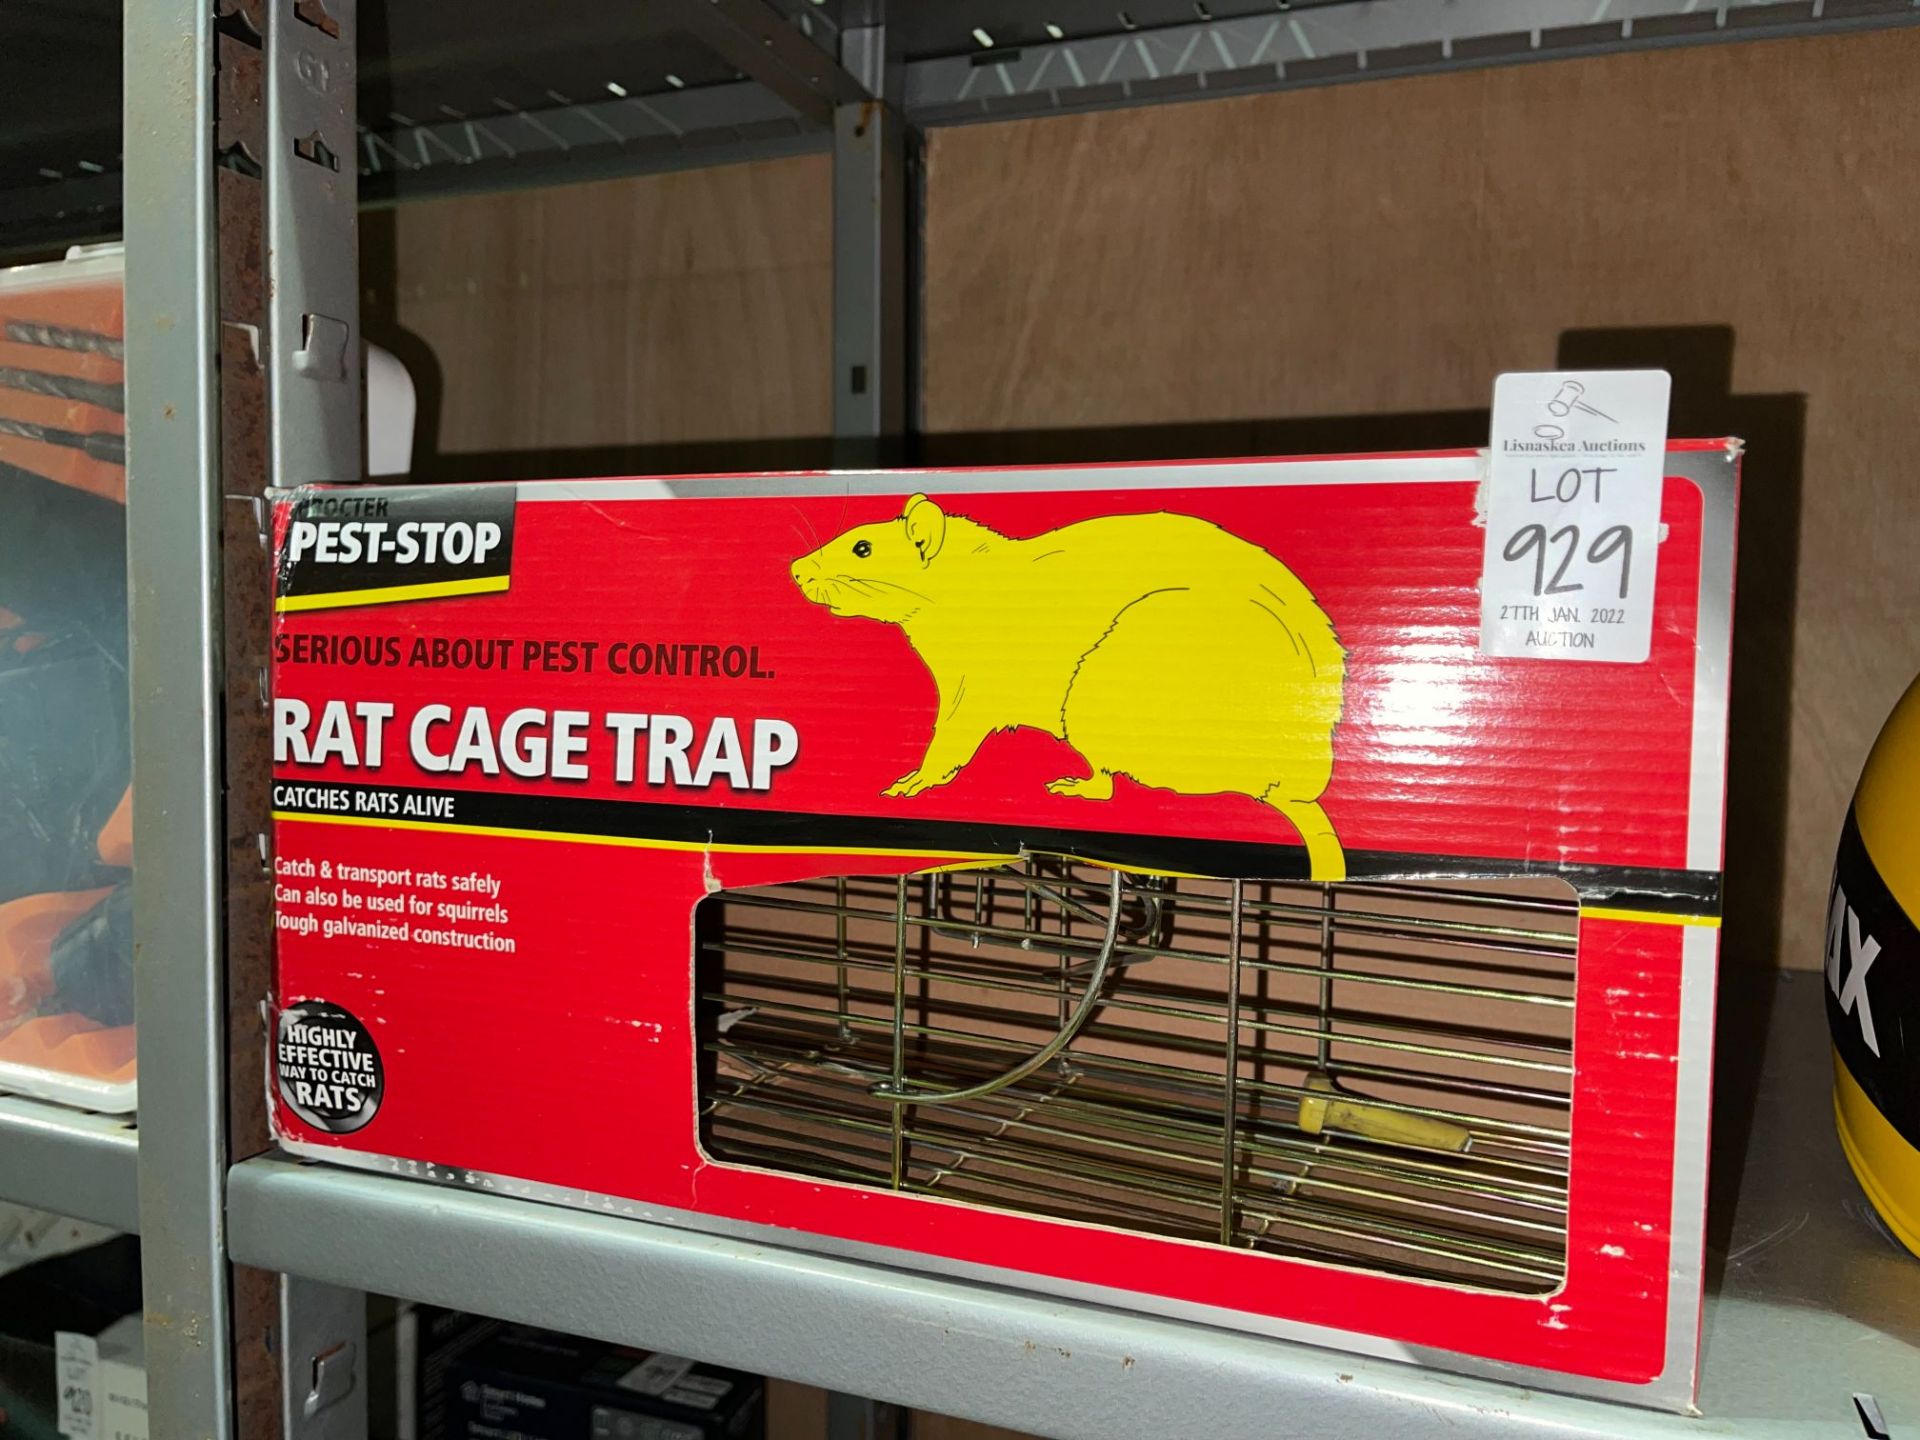 PEST-STOP RAT CAGE TRAP